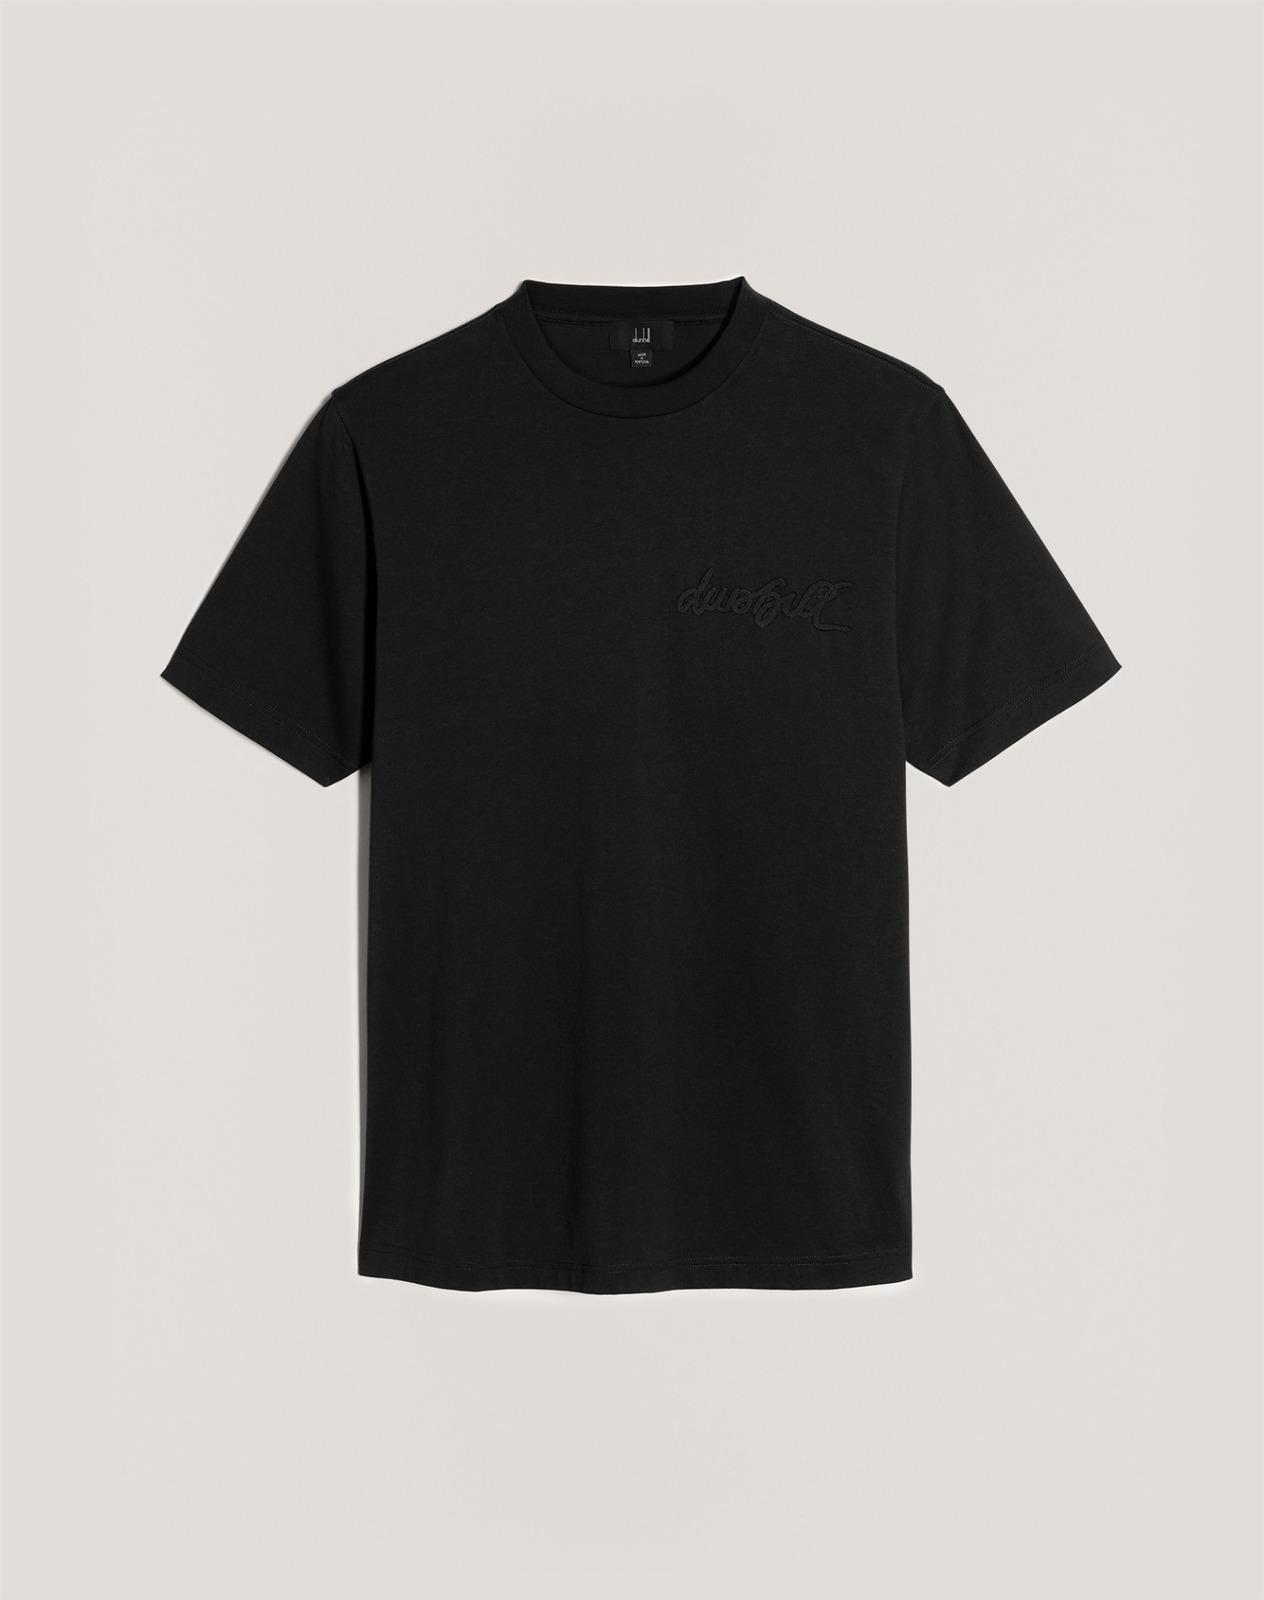 ダンヒル“オールブラック”のロゴTシャツやアイコン「ロック バッグ」限定品がギンザ シックスで コピー